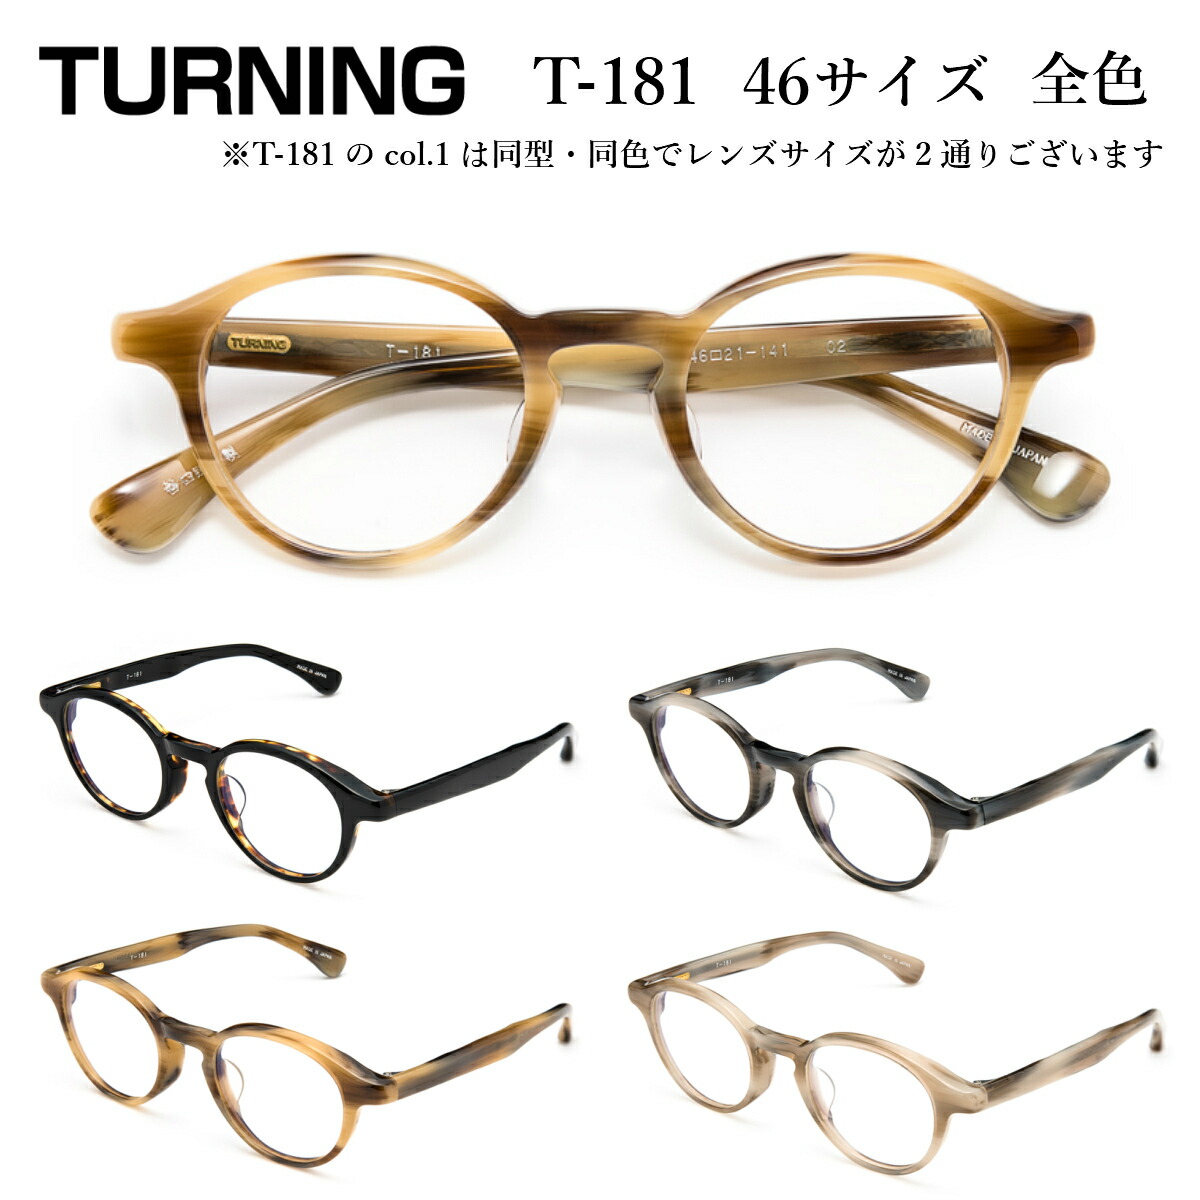 楽天市場 Turning ターニング 谷口眼鏡 T 181 46 サイズ 全色 メガネ